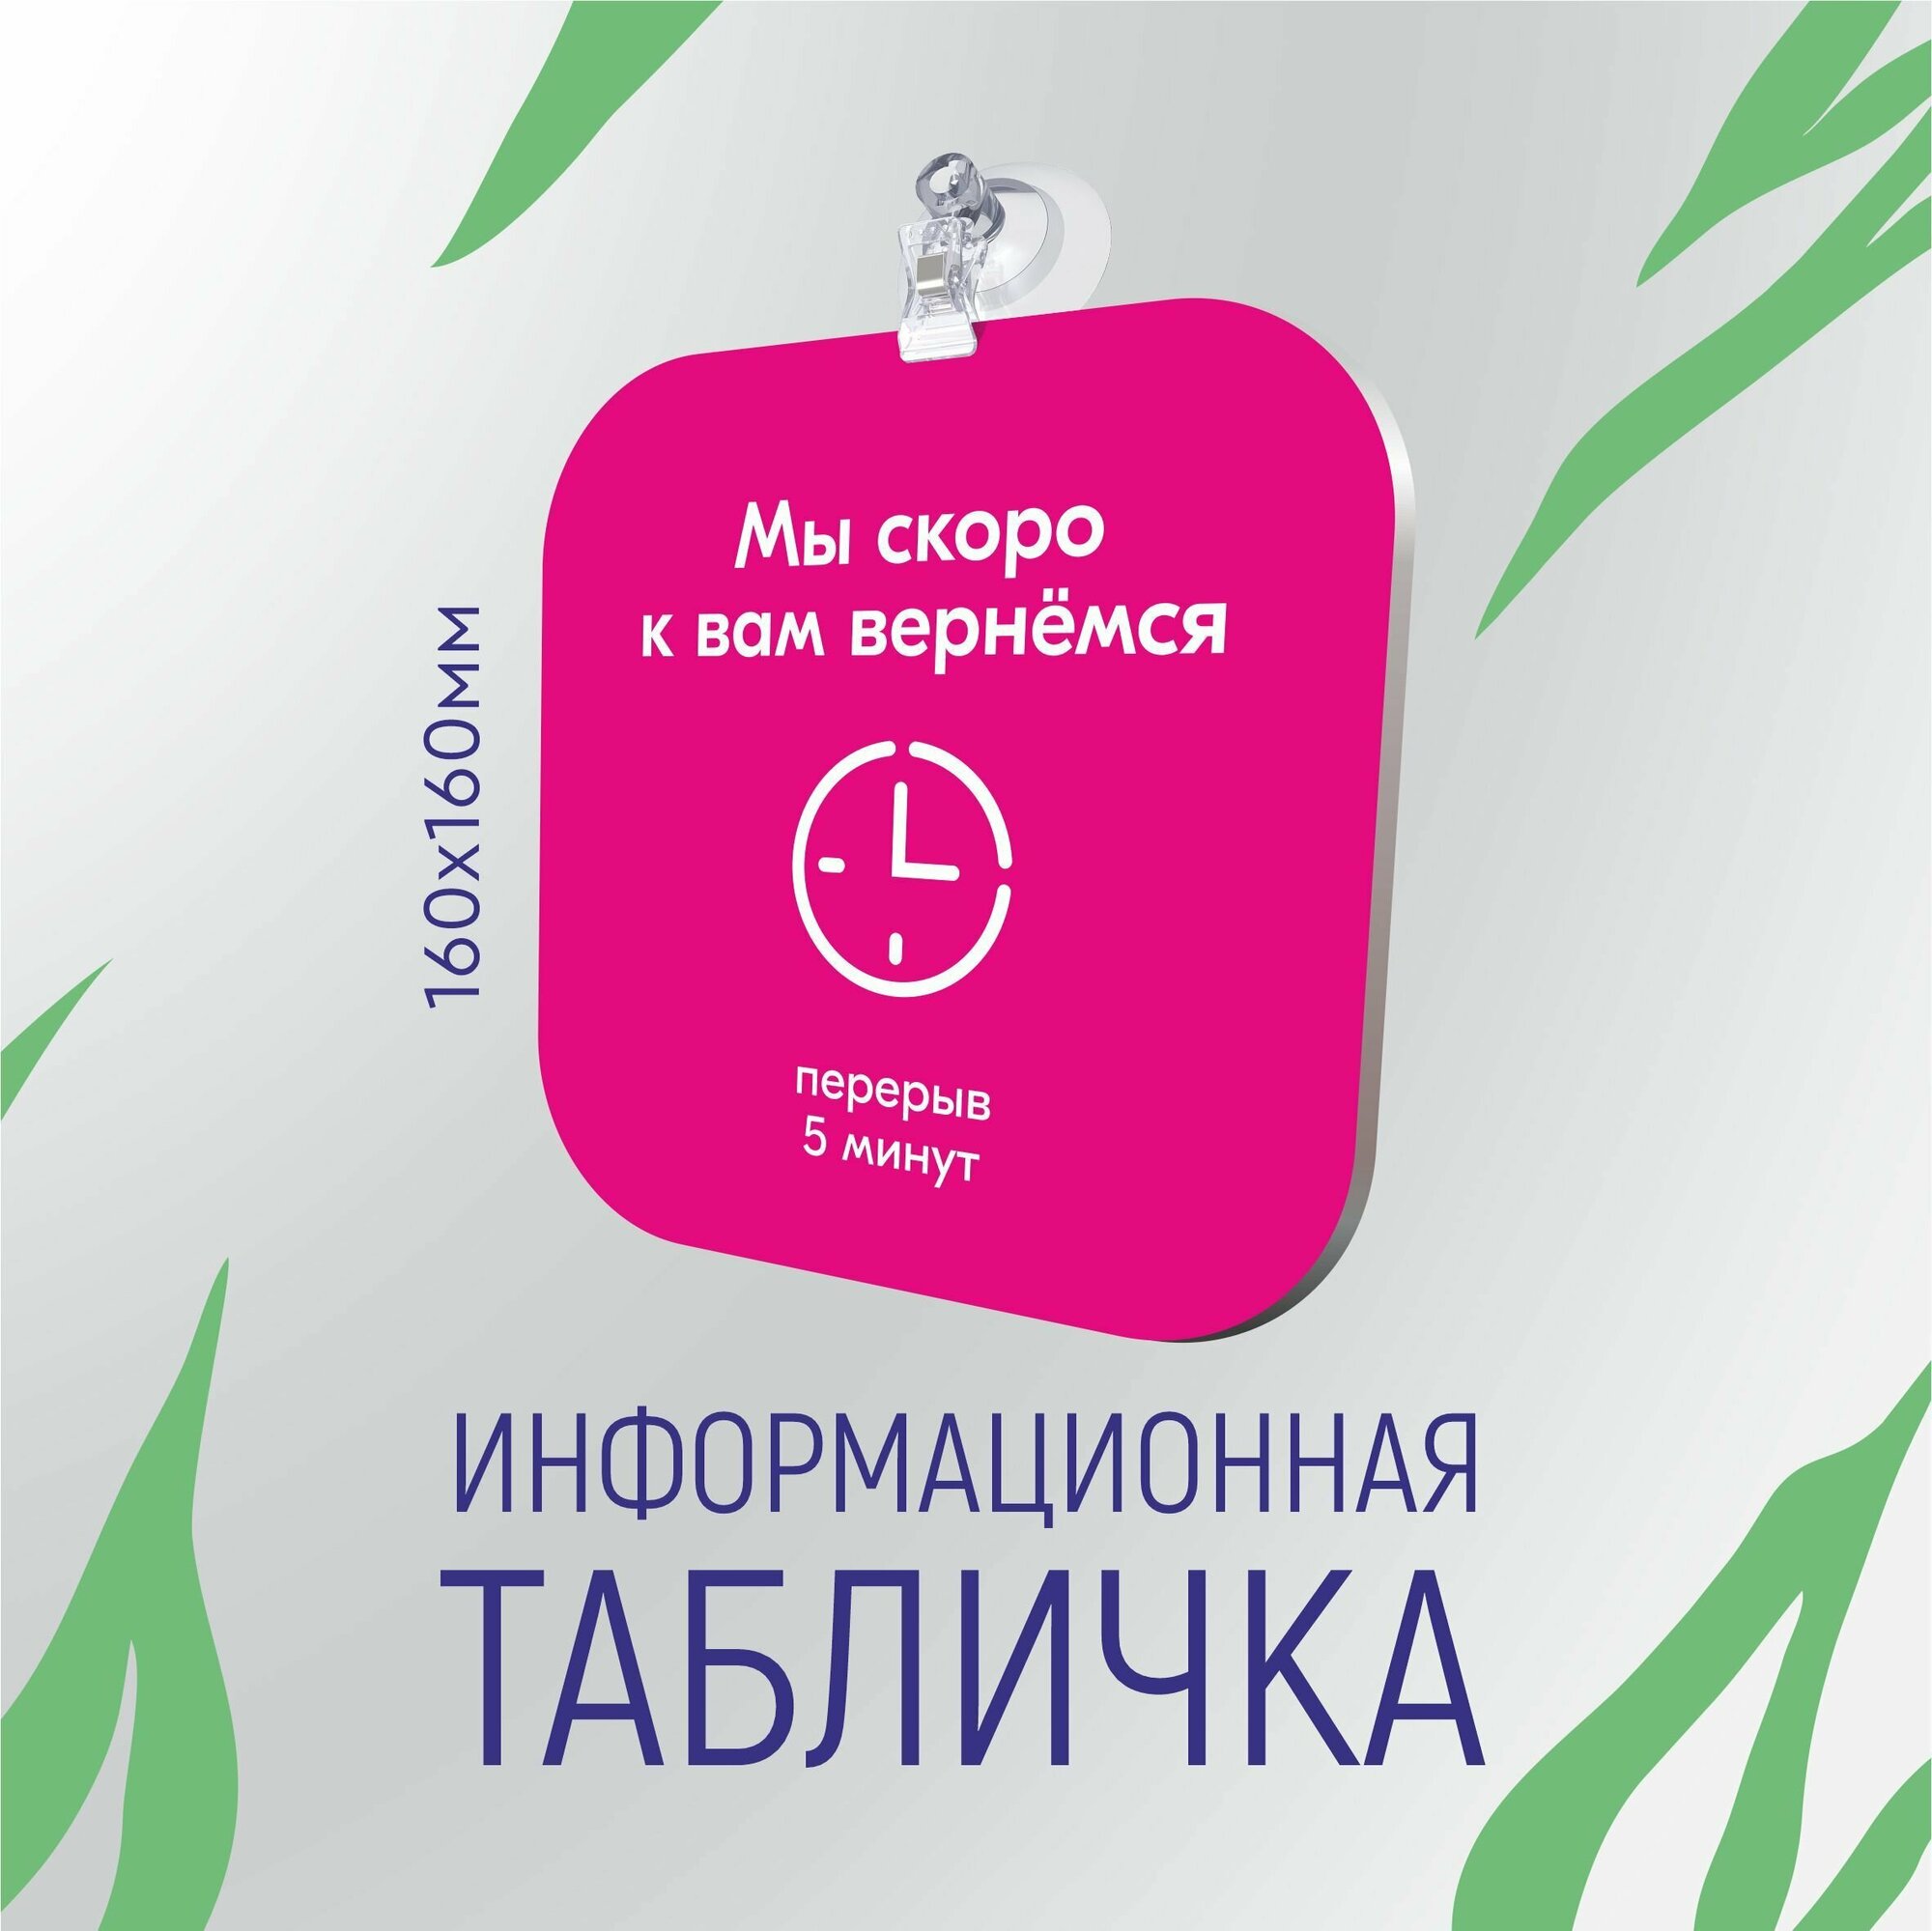 Табличка "технический перерыв 5 минут" для ПВЗ озон 16х16см, розовый цвет